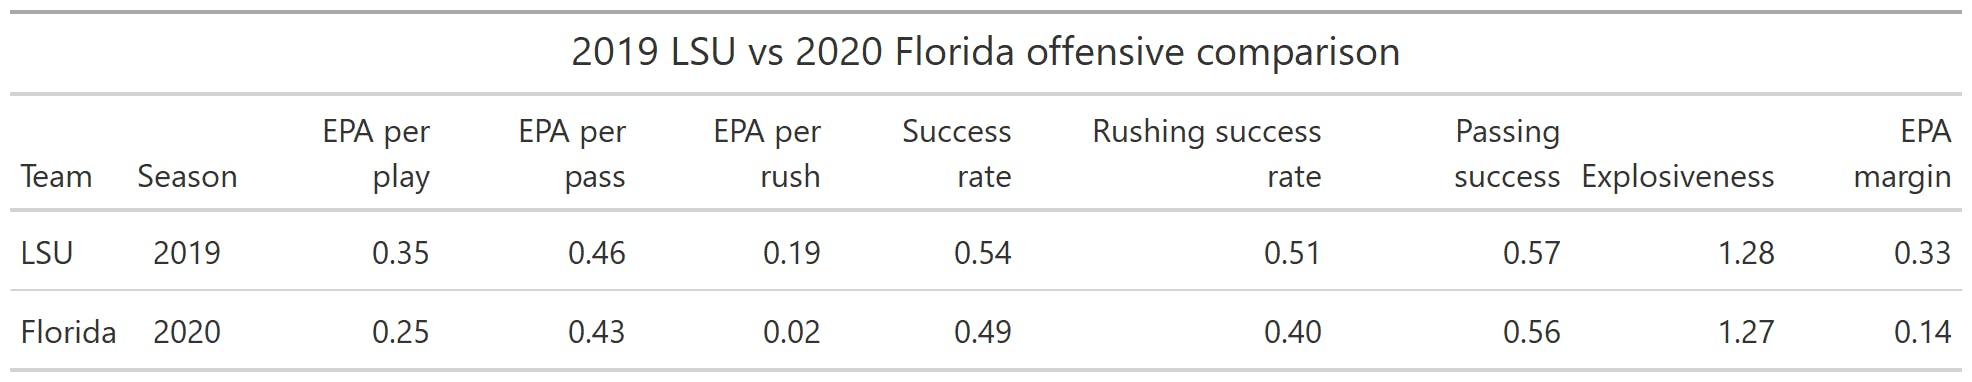 2019 LSU vs. 2020 Florida offensive comparison